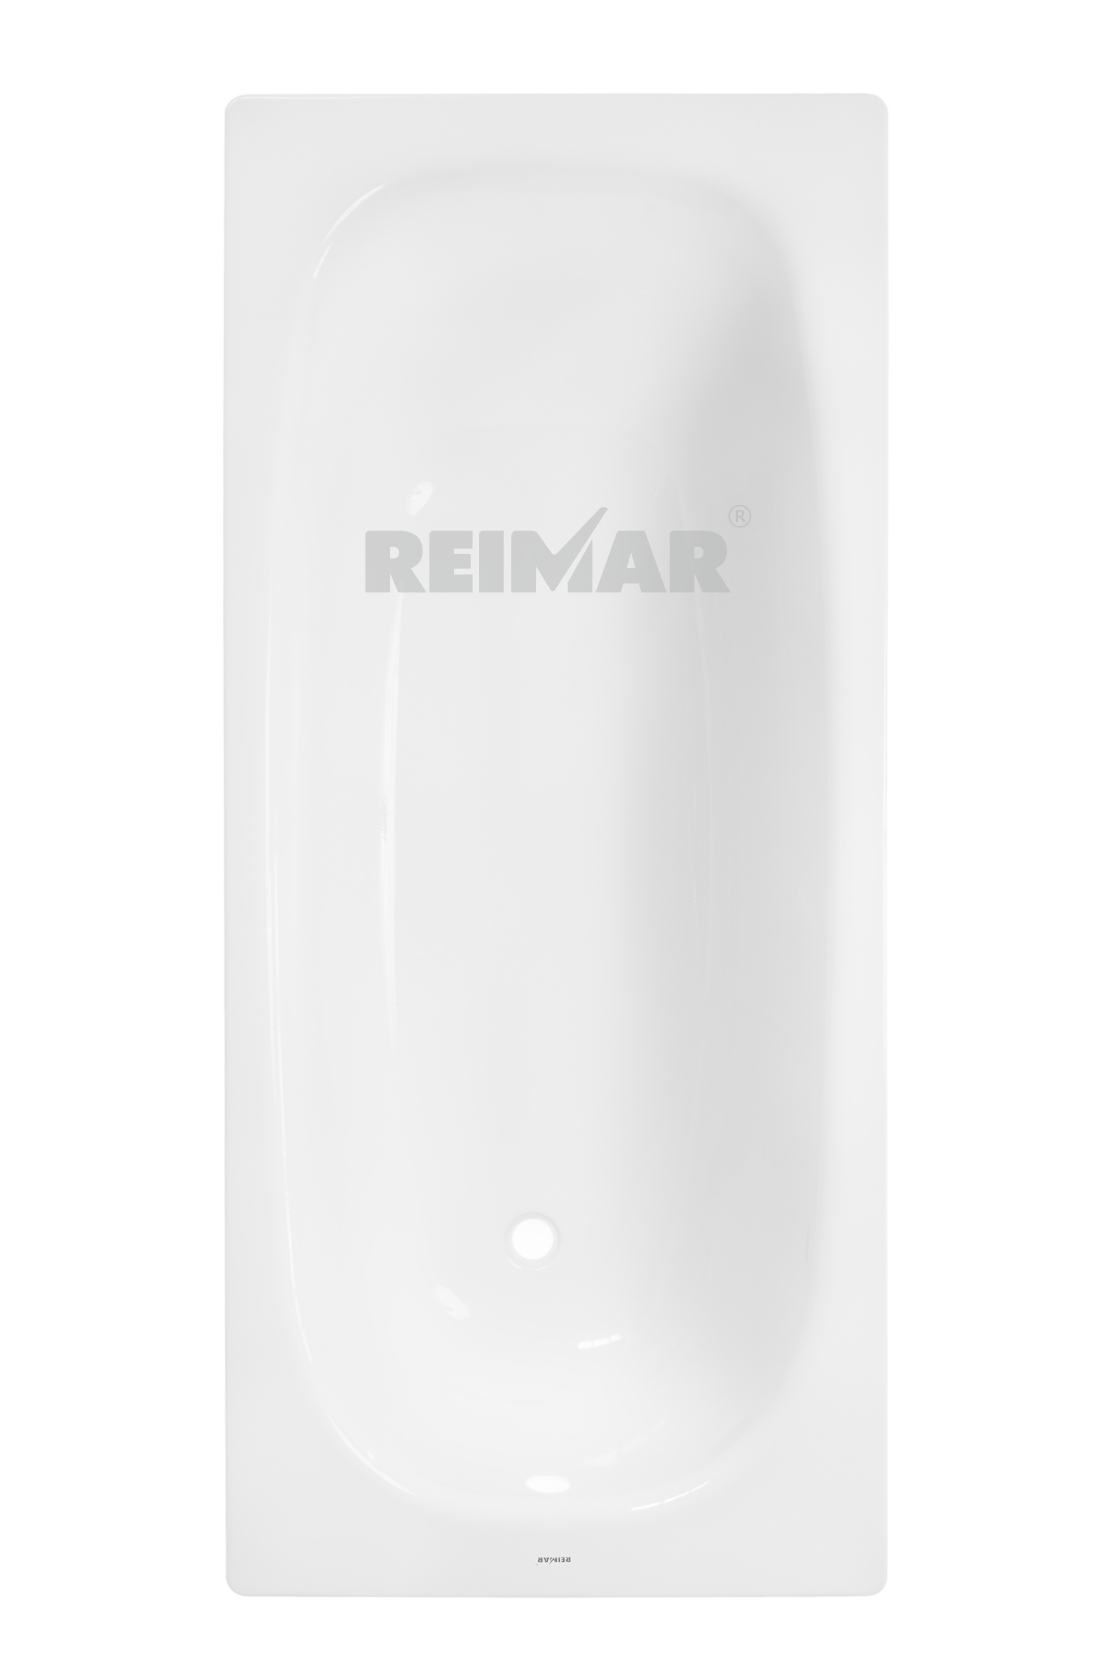 ванна стальная ВИЗ Reimar 1600х700 (R-64901) эмал. с опорной подставкой ОР-61205